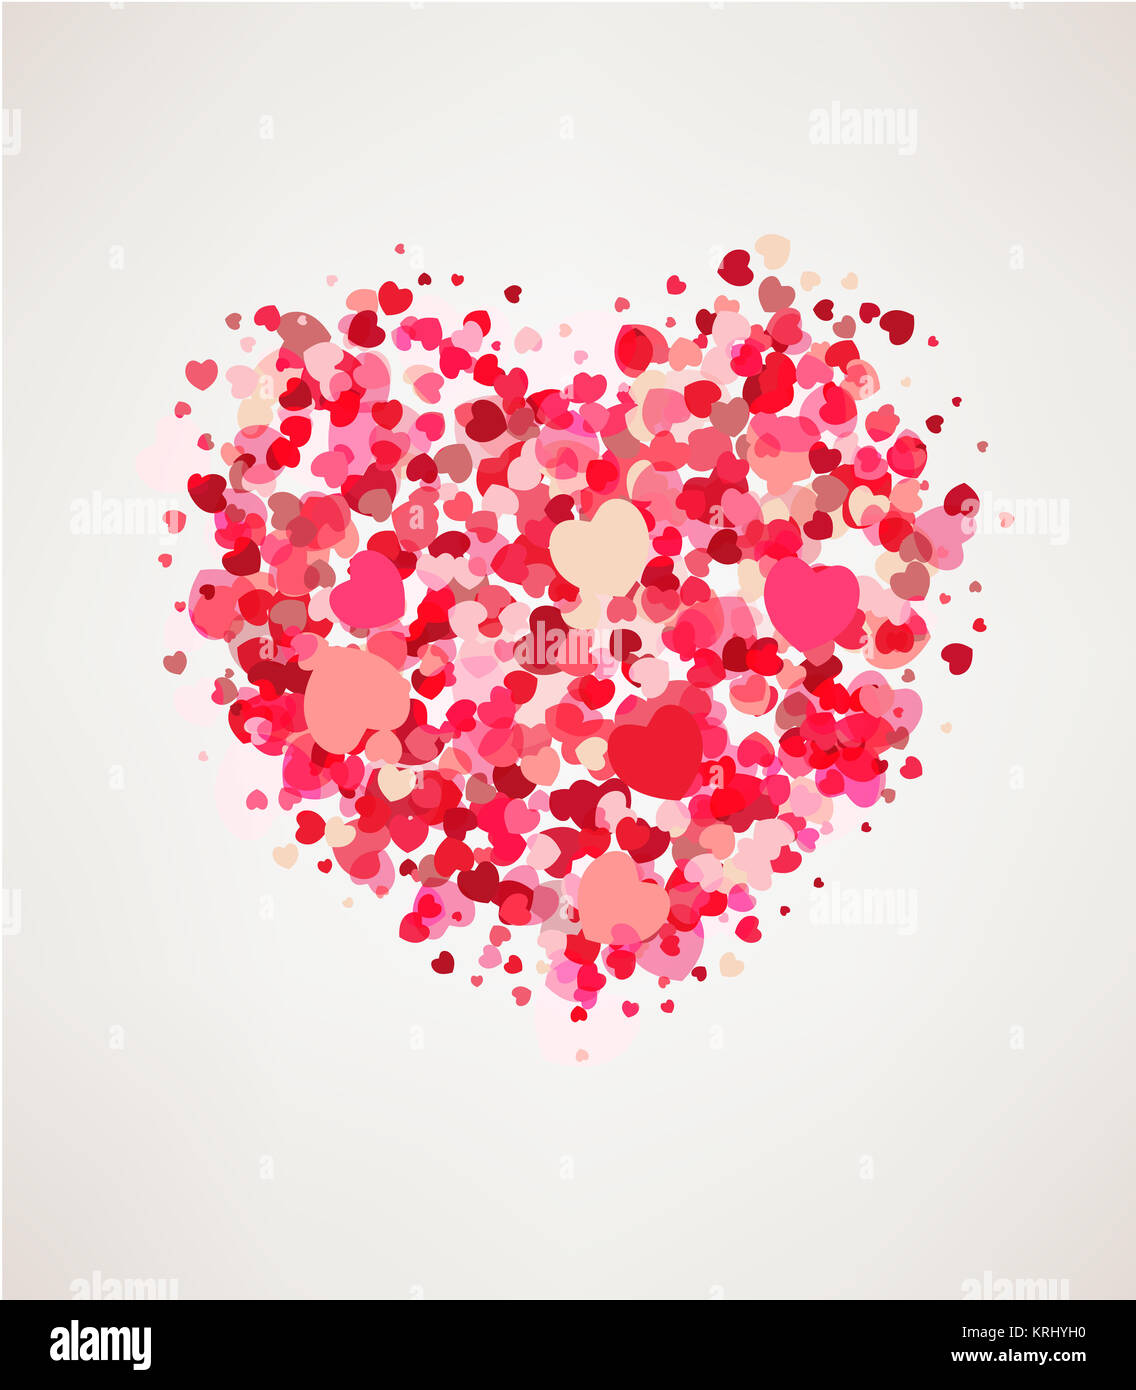 Feliz día de San Valentín tarjeta de felicitación Foto de stock